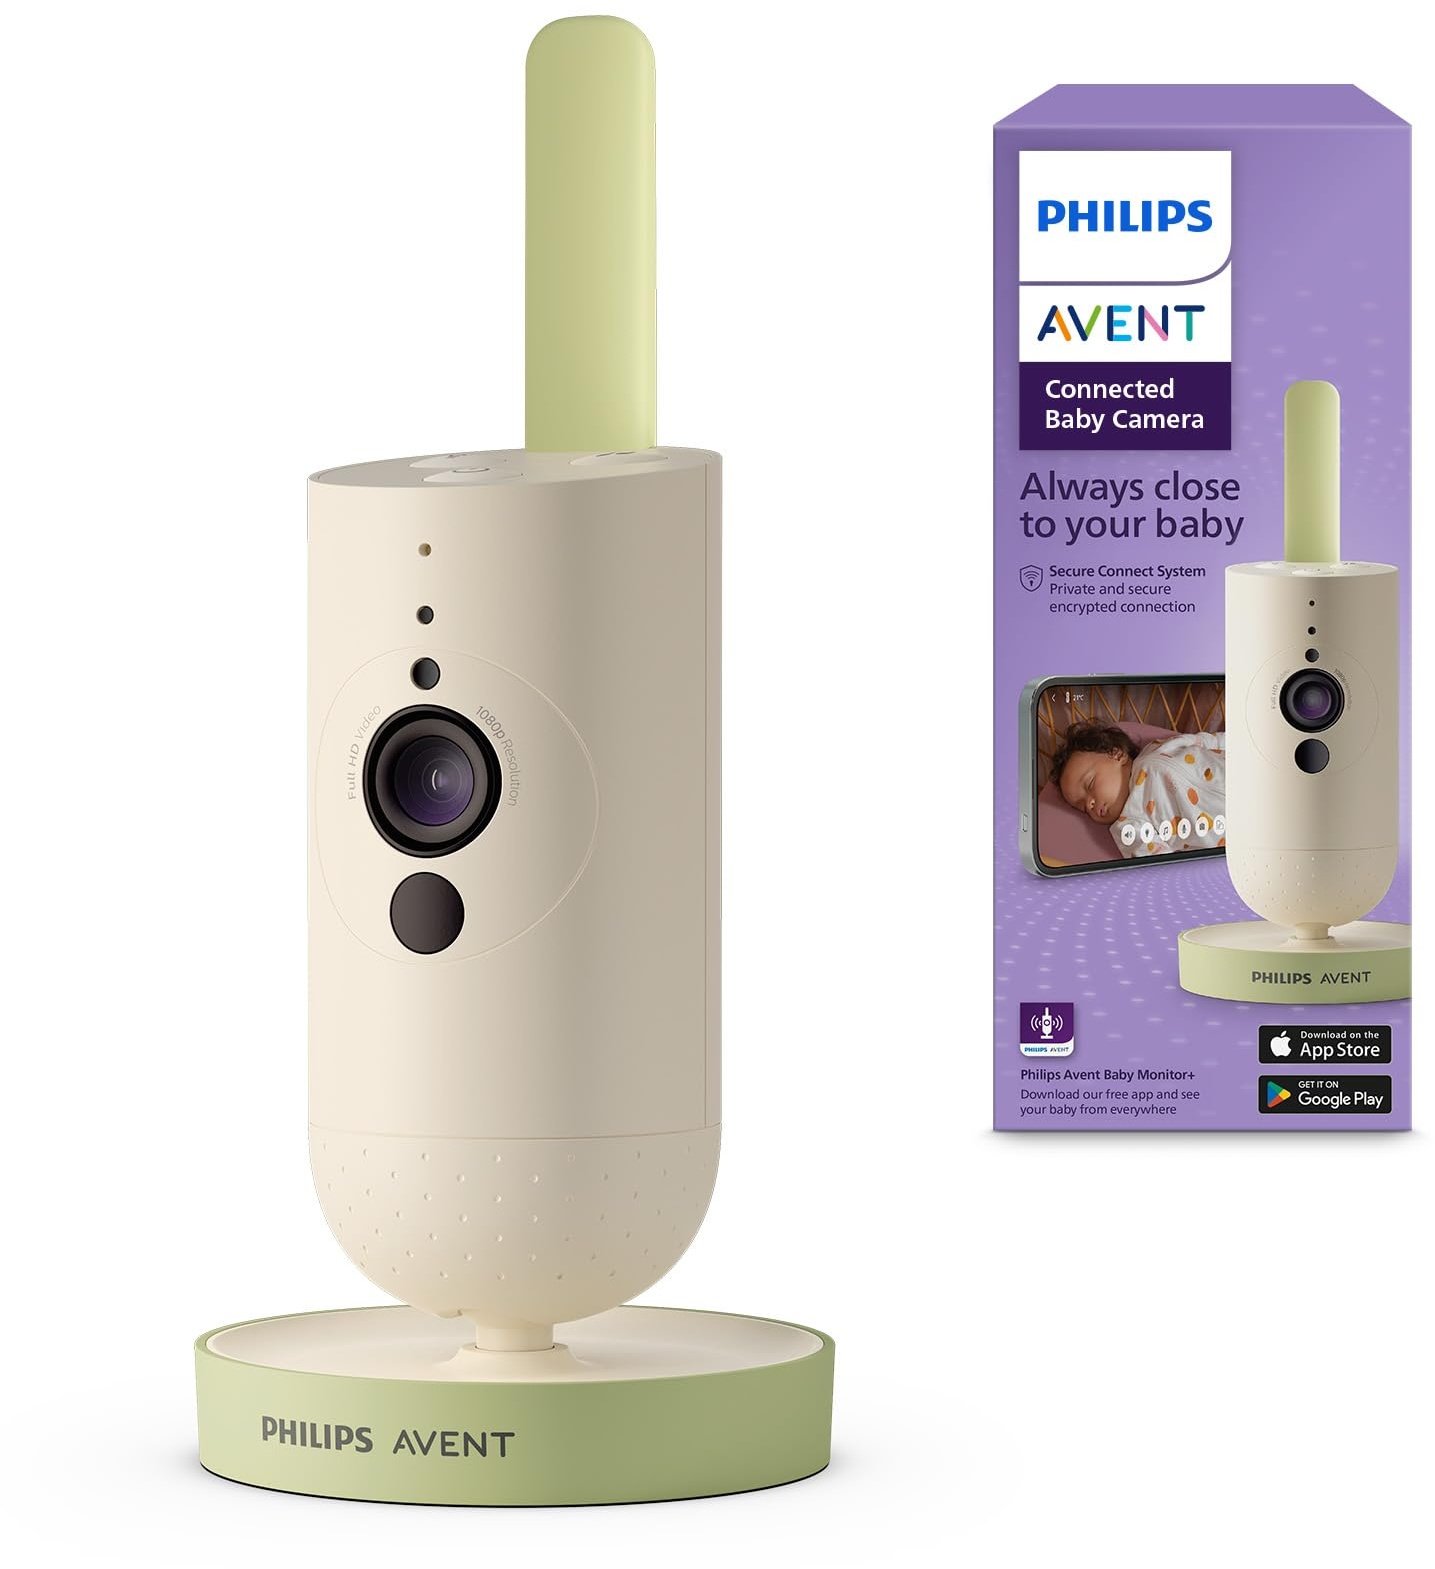 Philips Avent Connected Babykamera mit App, private und sichere Verschlüsselung, Audio, 2-facher Zoom, Nachtsichtfunktion, VOX, Gegensprechfunktion, Schlaflieder und weißes Rauschen (Modell SCD643/26)